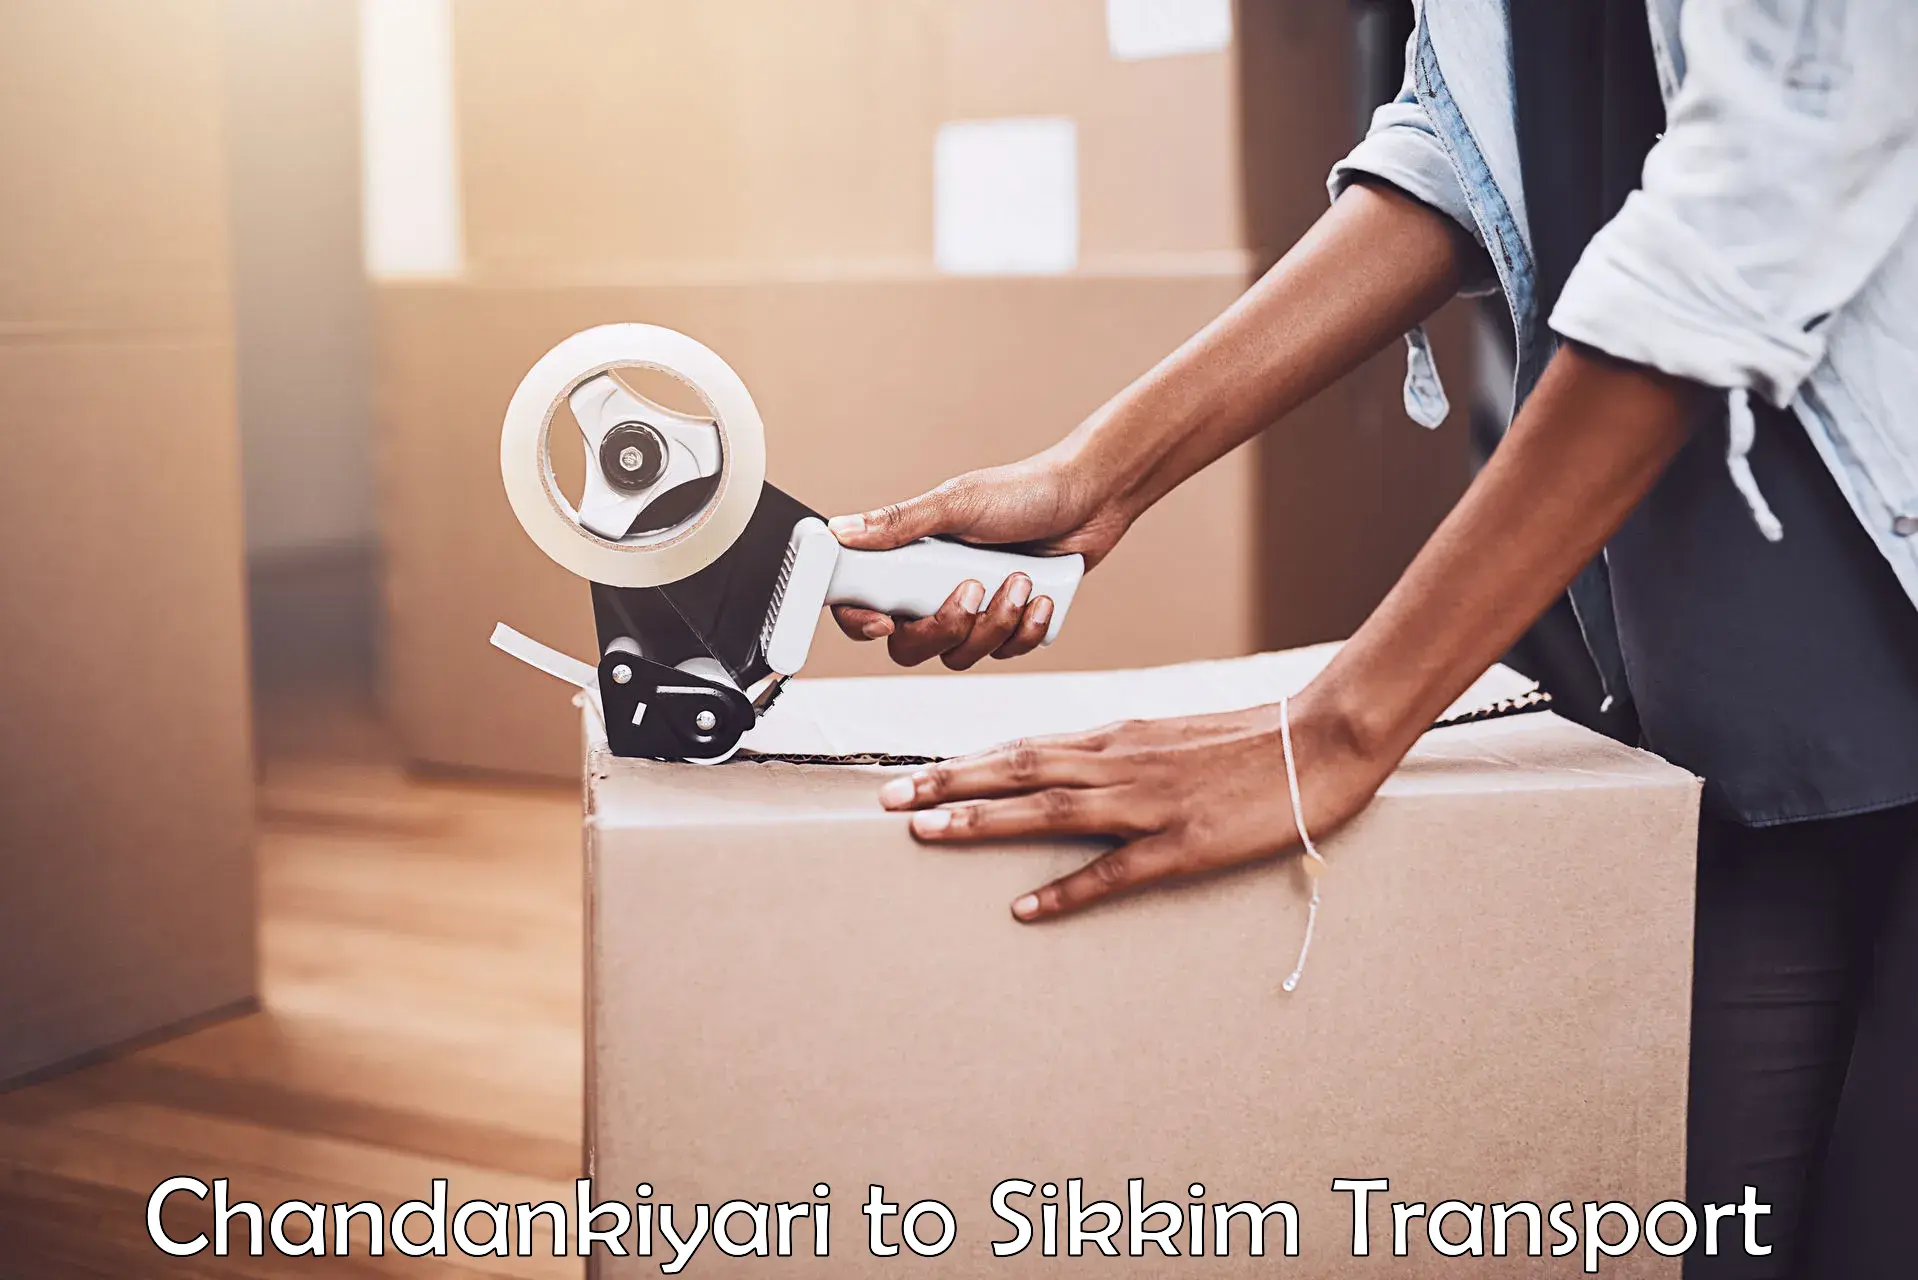 Transport in sharing Chandankiyari to South Sikkim